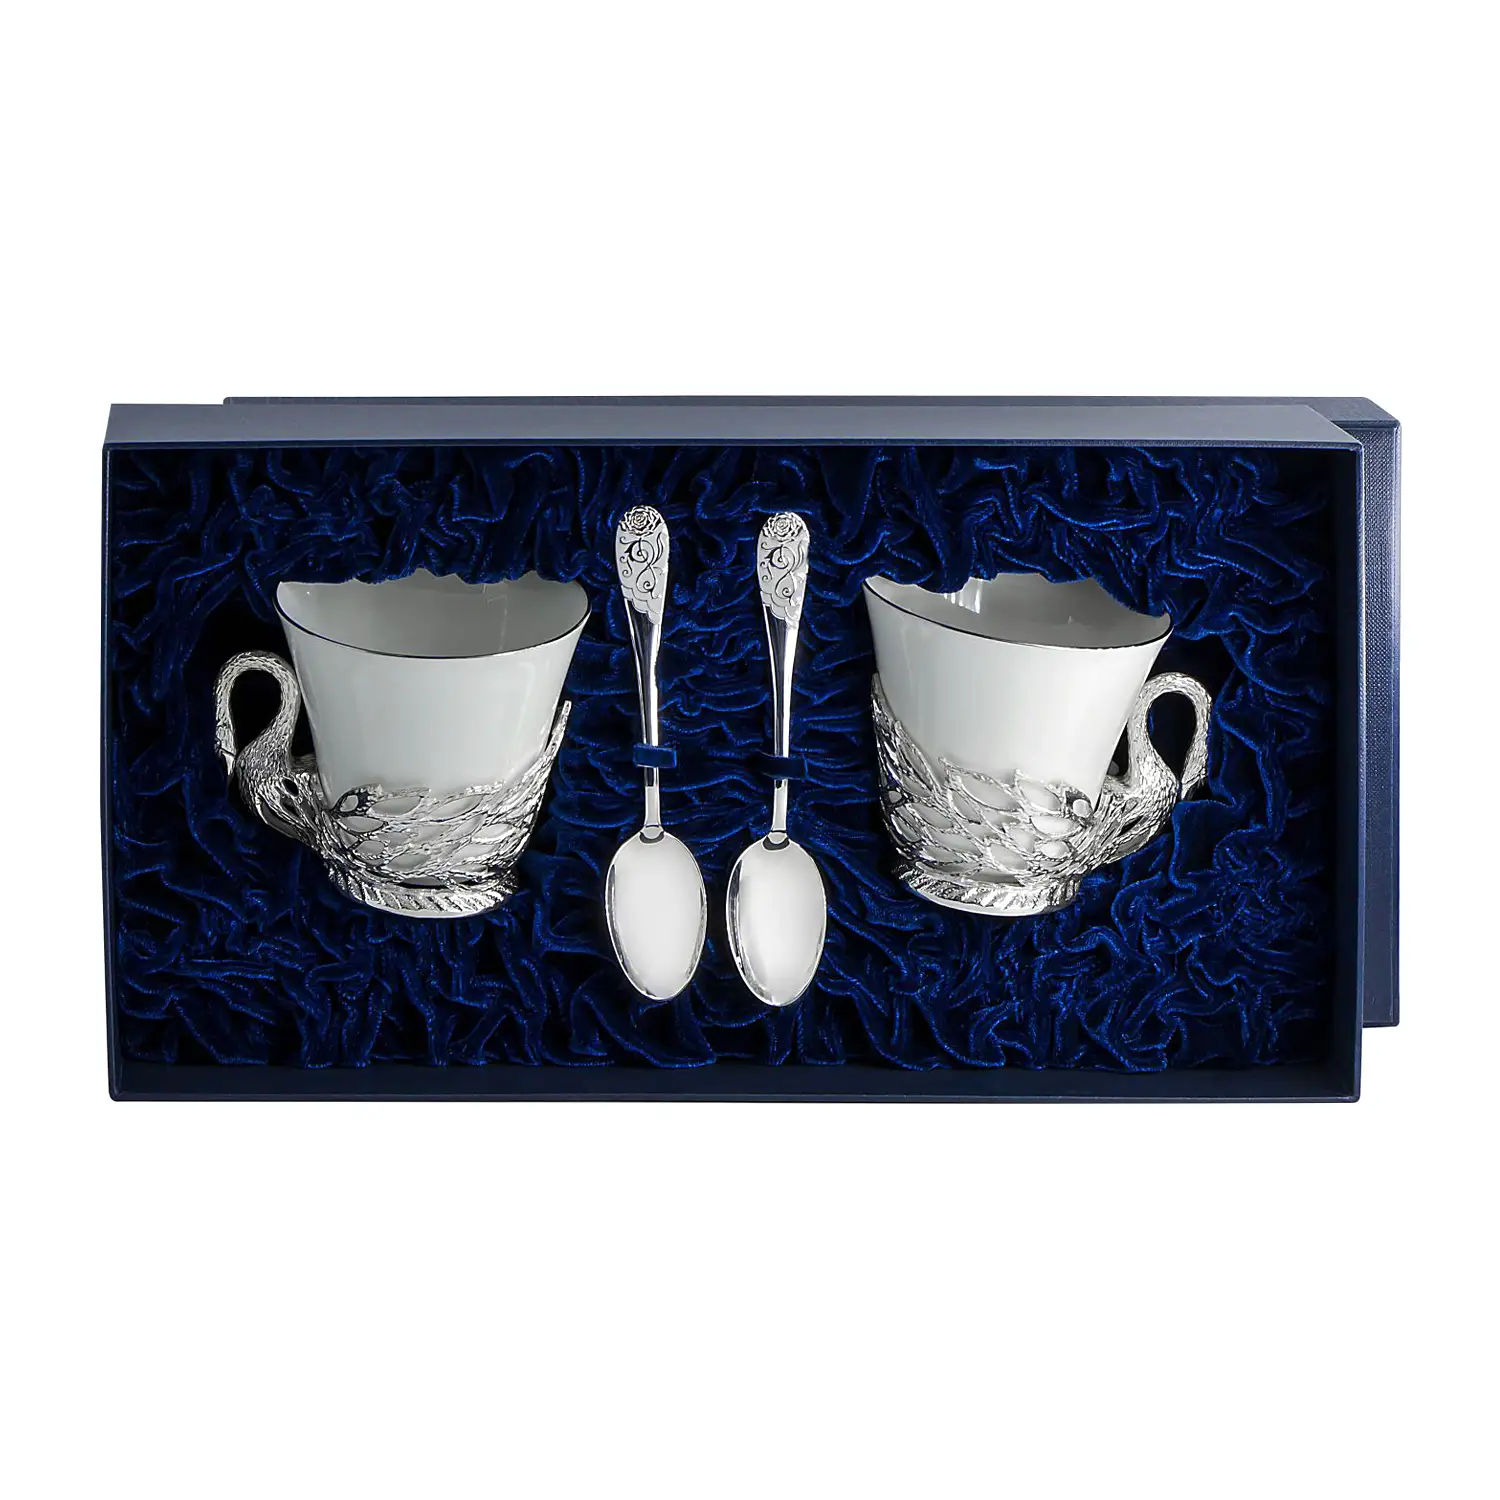 Набор чайных чашек Лебедь: ложка, чашка (Серебро 925) набор чайных чашек симфония ложка чашка серебро 925